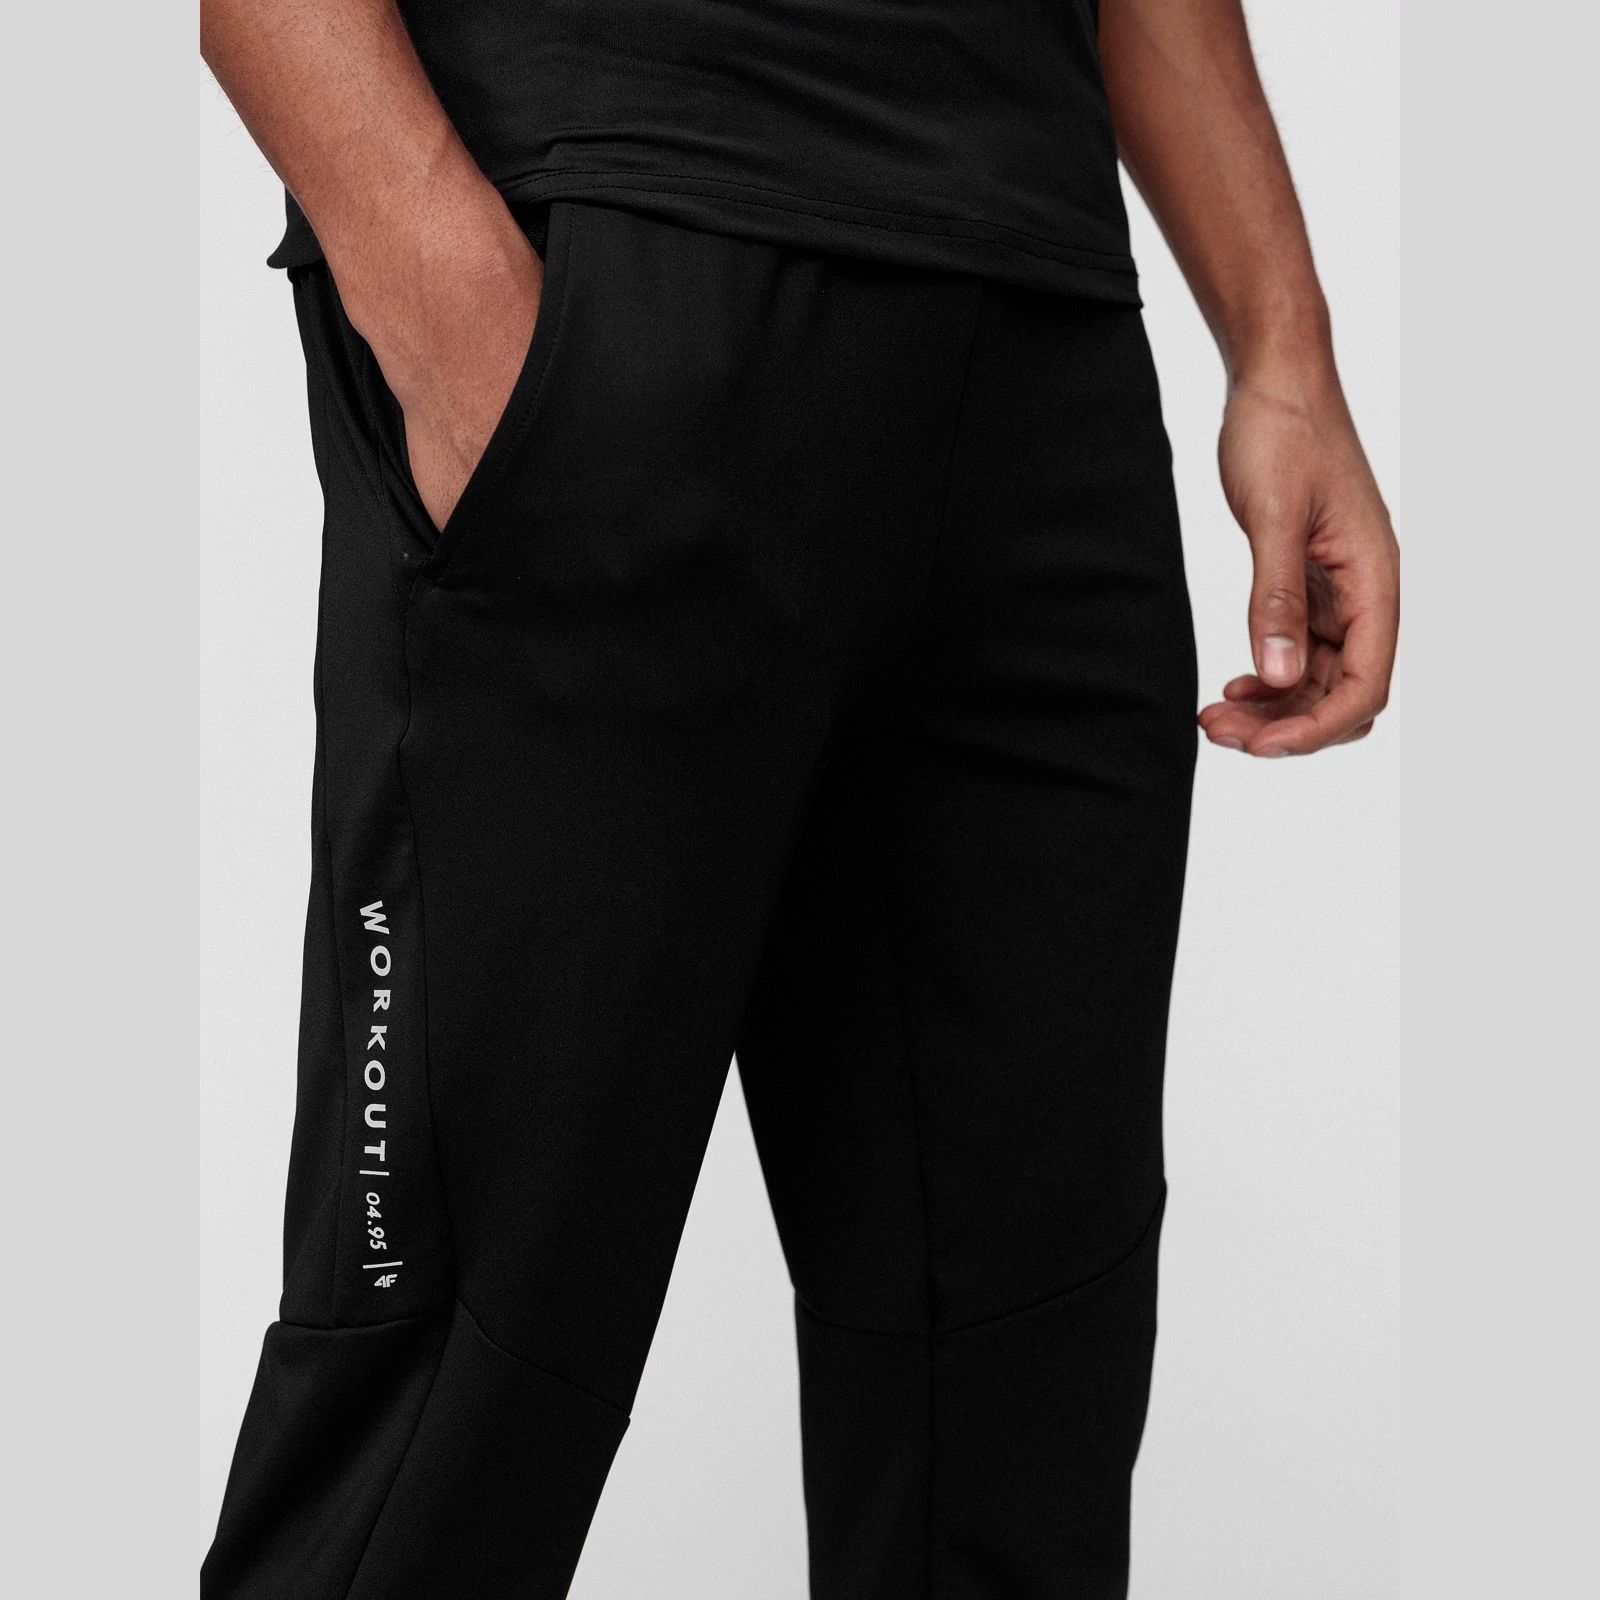 Joggers & Sweatpants -  4f Pantaloni funcționali pentru bărbați SPMTR011